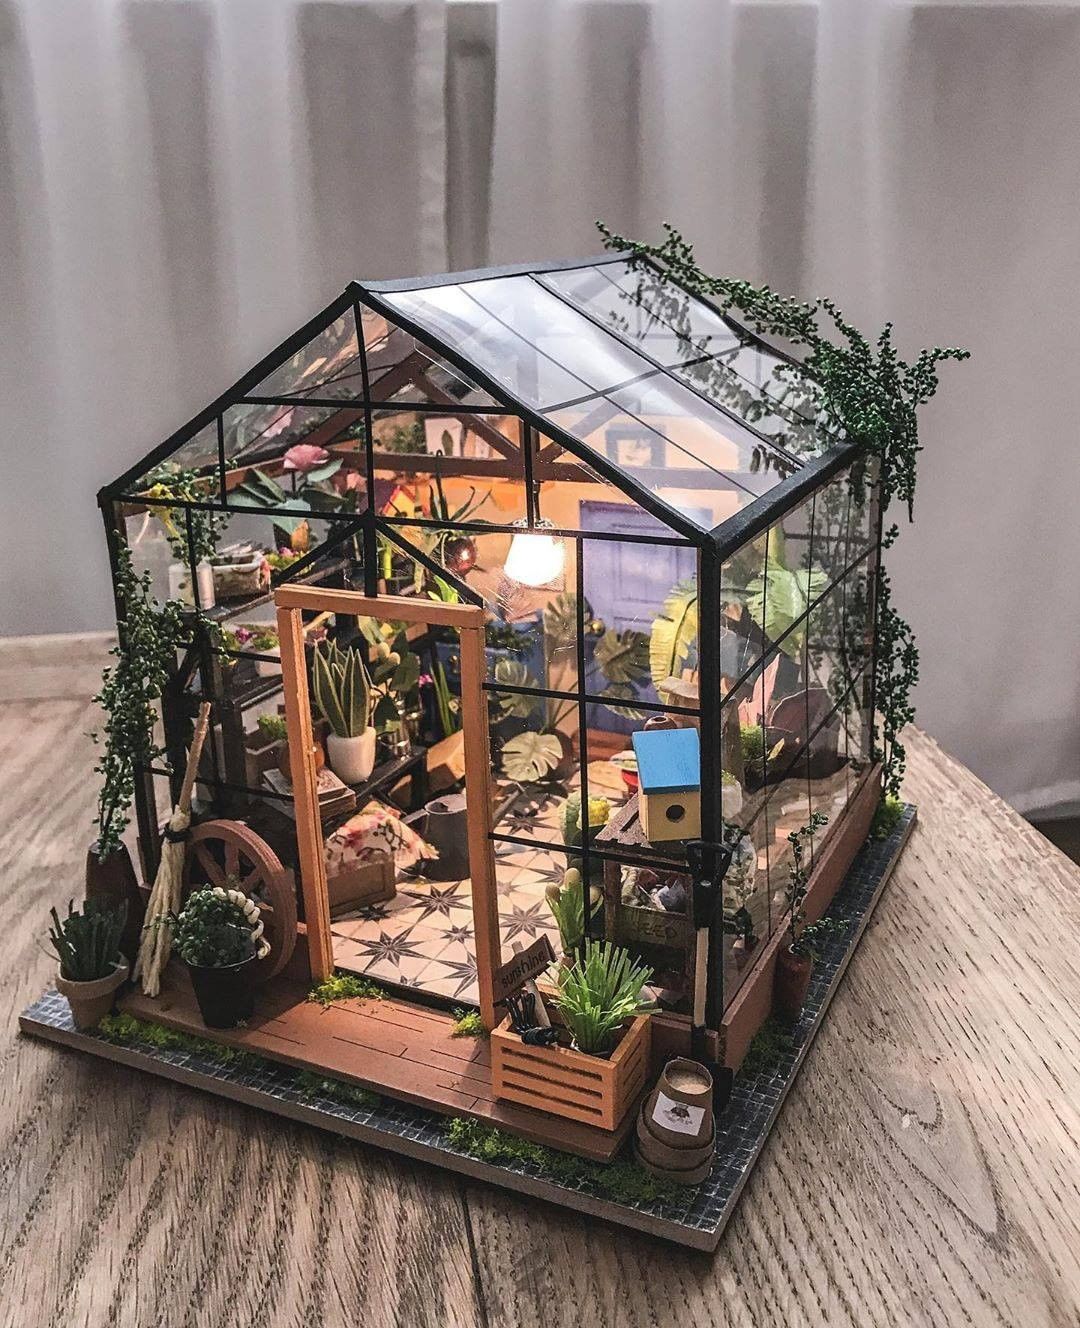 DIY : comment fabriquer une maison miniature réaliste ?